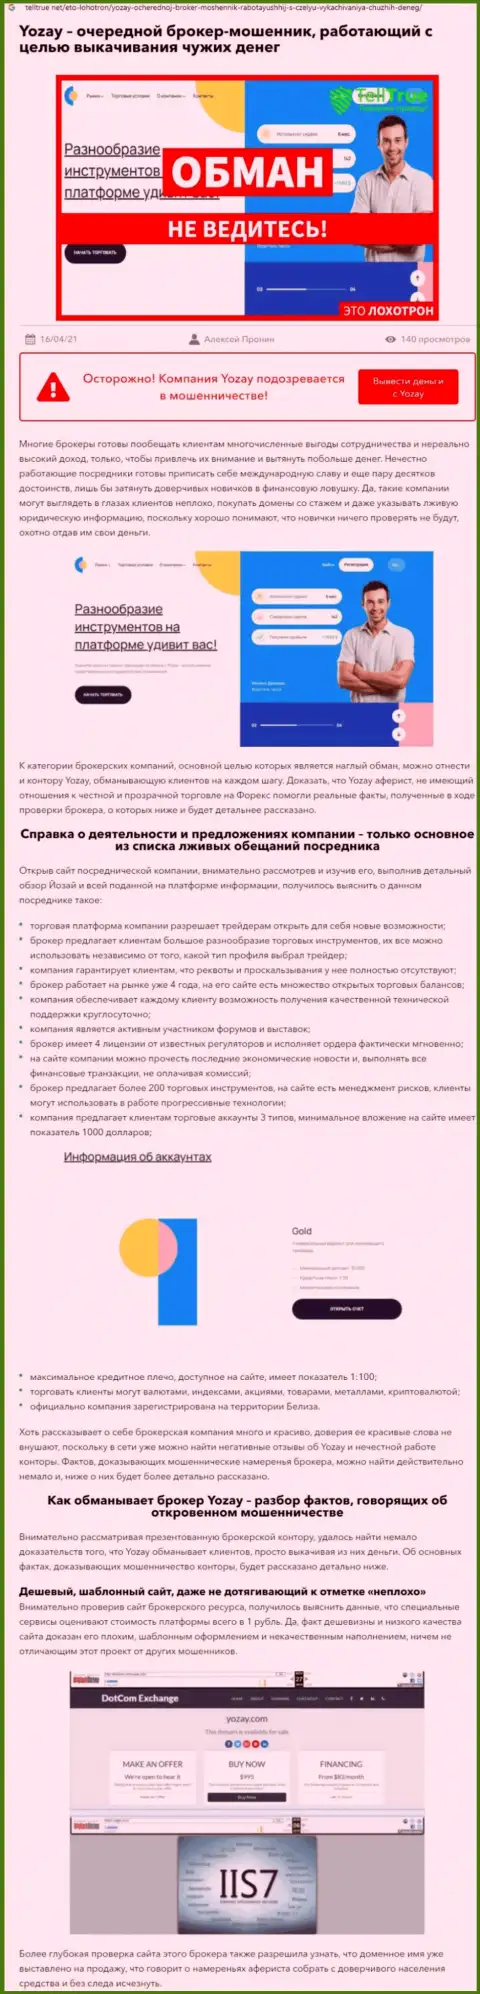 О вложенных в YOZay Com денежных средствах можете и не вспоминать, отжимают все до последнего рубля (обзор)